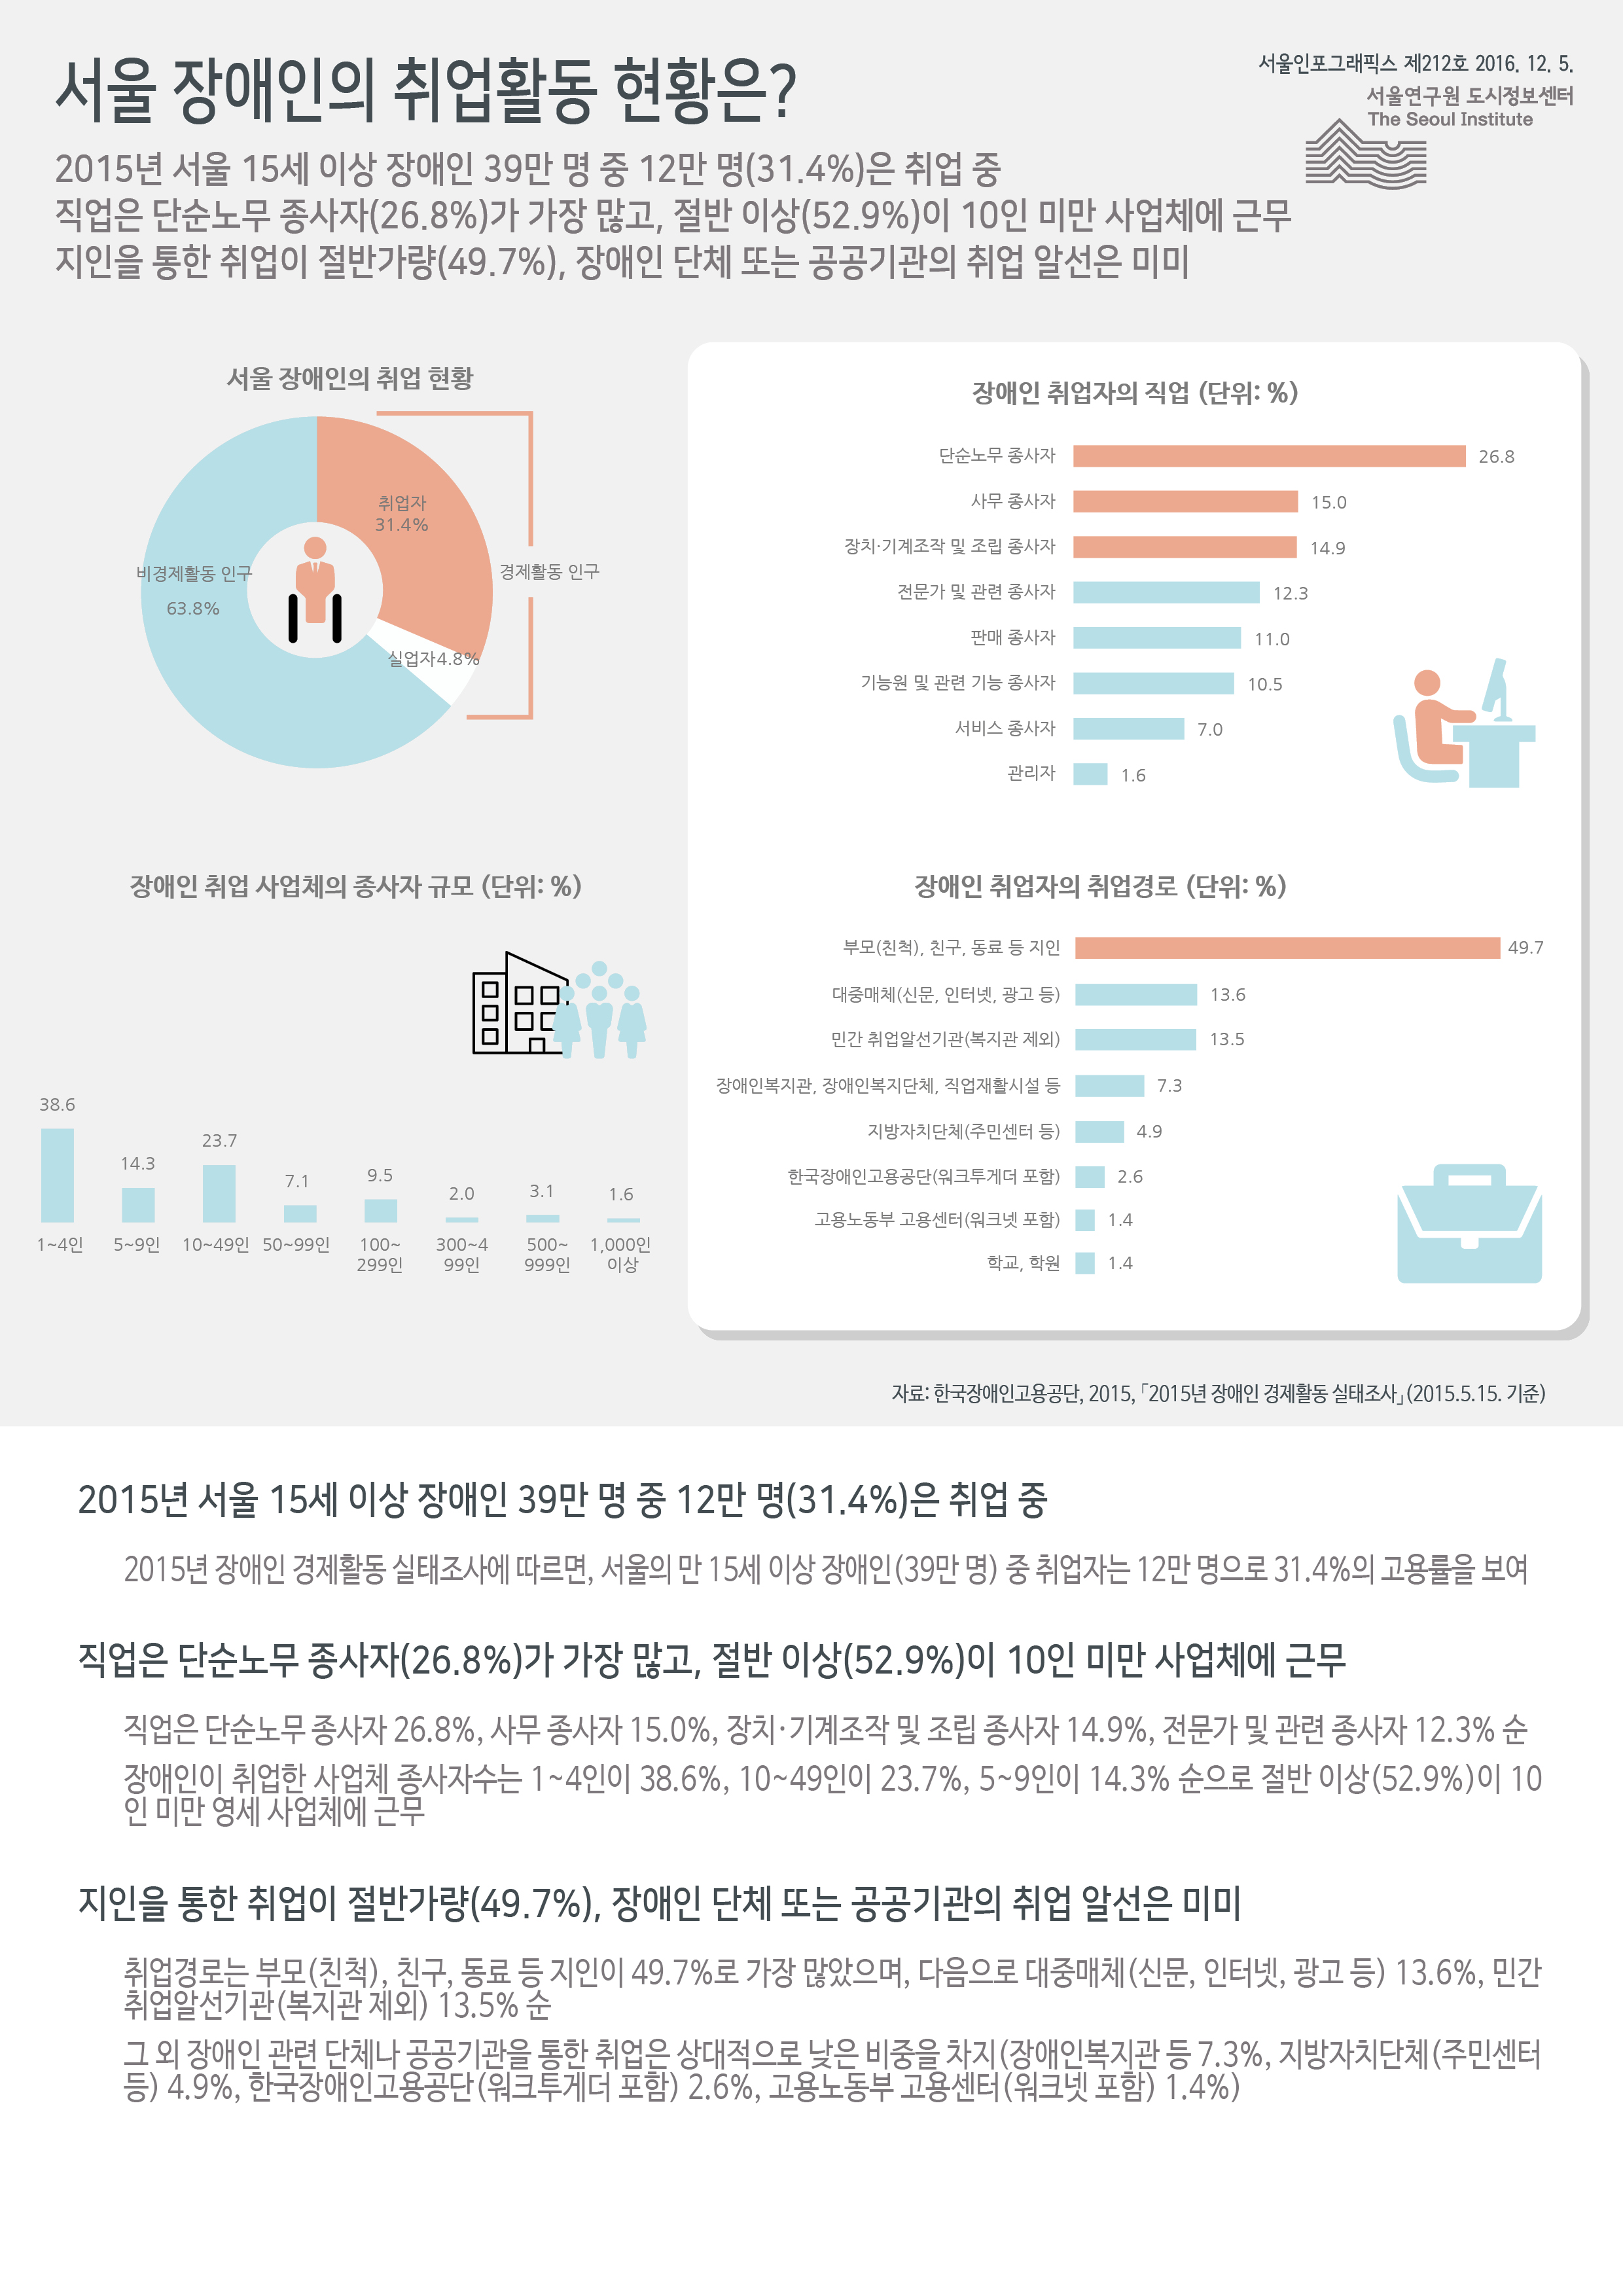 서울 장애인의 취업활동 현황은? 서울인포그래픽스 제212호 2016년 12월 5일 2015년 서울 15세 이상 장애인 39만 명 중 12만 명(31.4%)은 취업 중. 직업은 단순노무 종사자(26.8%)가 가장 많고, 절반 이상(52.9%)이 10인 미만 사업체에 근무. 지인을 통한 취업이 절반가량(49.7%), 장애인 단체 또는 공공기관의 취업 알선은 미미함으로 정리 될 수 있습니다. 인포그래픽으로 제공되는 그래픽은 하단에 표로 자세히 제공됩니다.